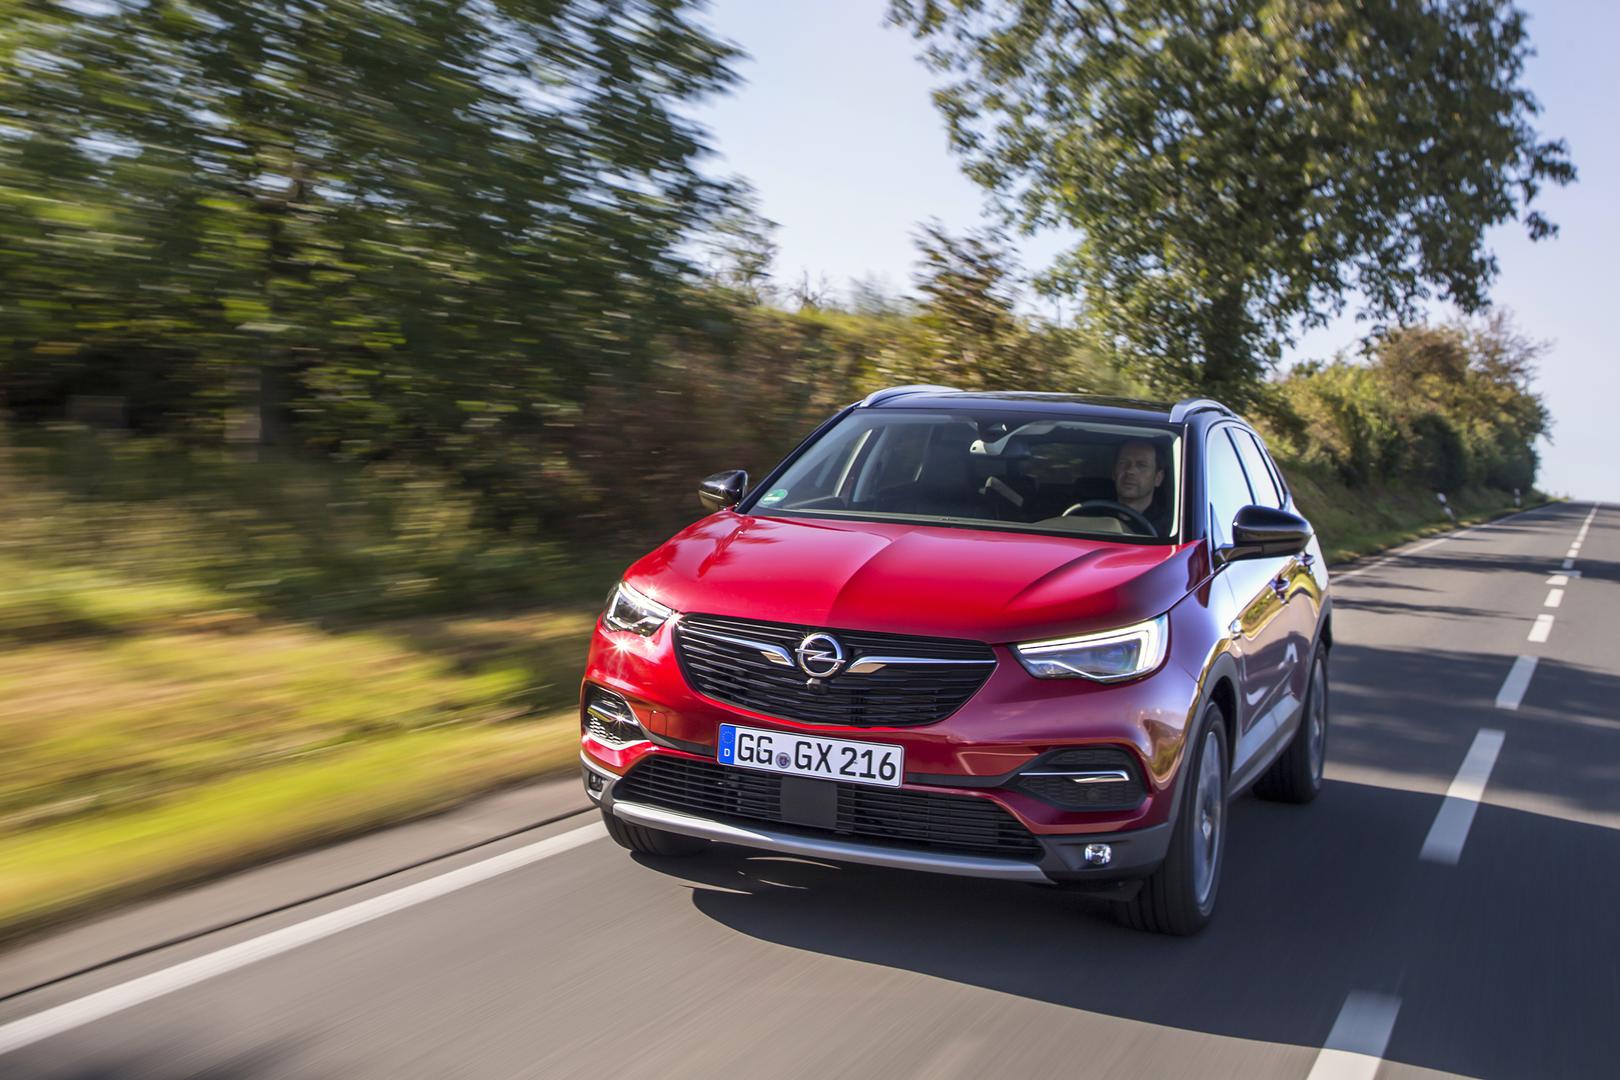 Novi najveći član X obitelji, Opel Grandland X, već je u prodaji, a njegova 2,0 AT8 izvedba sa 180 konja stiže u proljeće